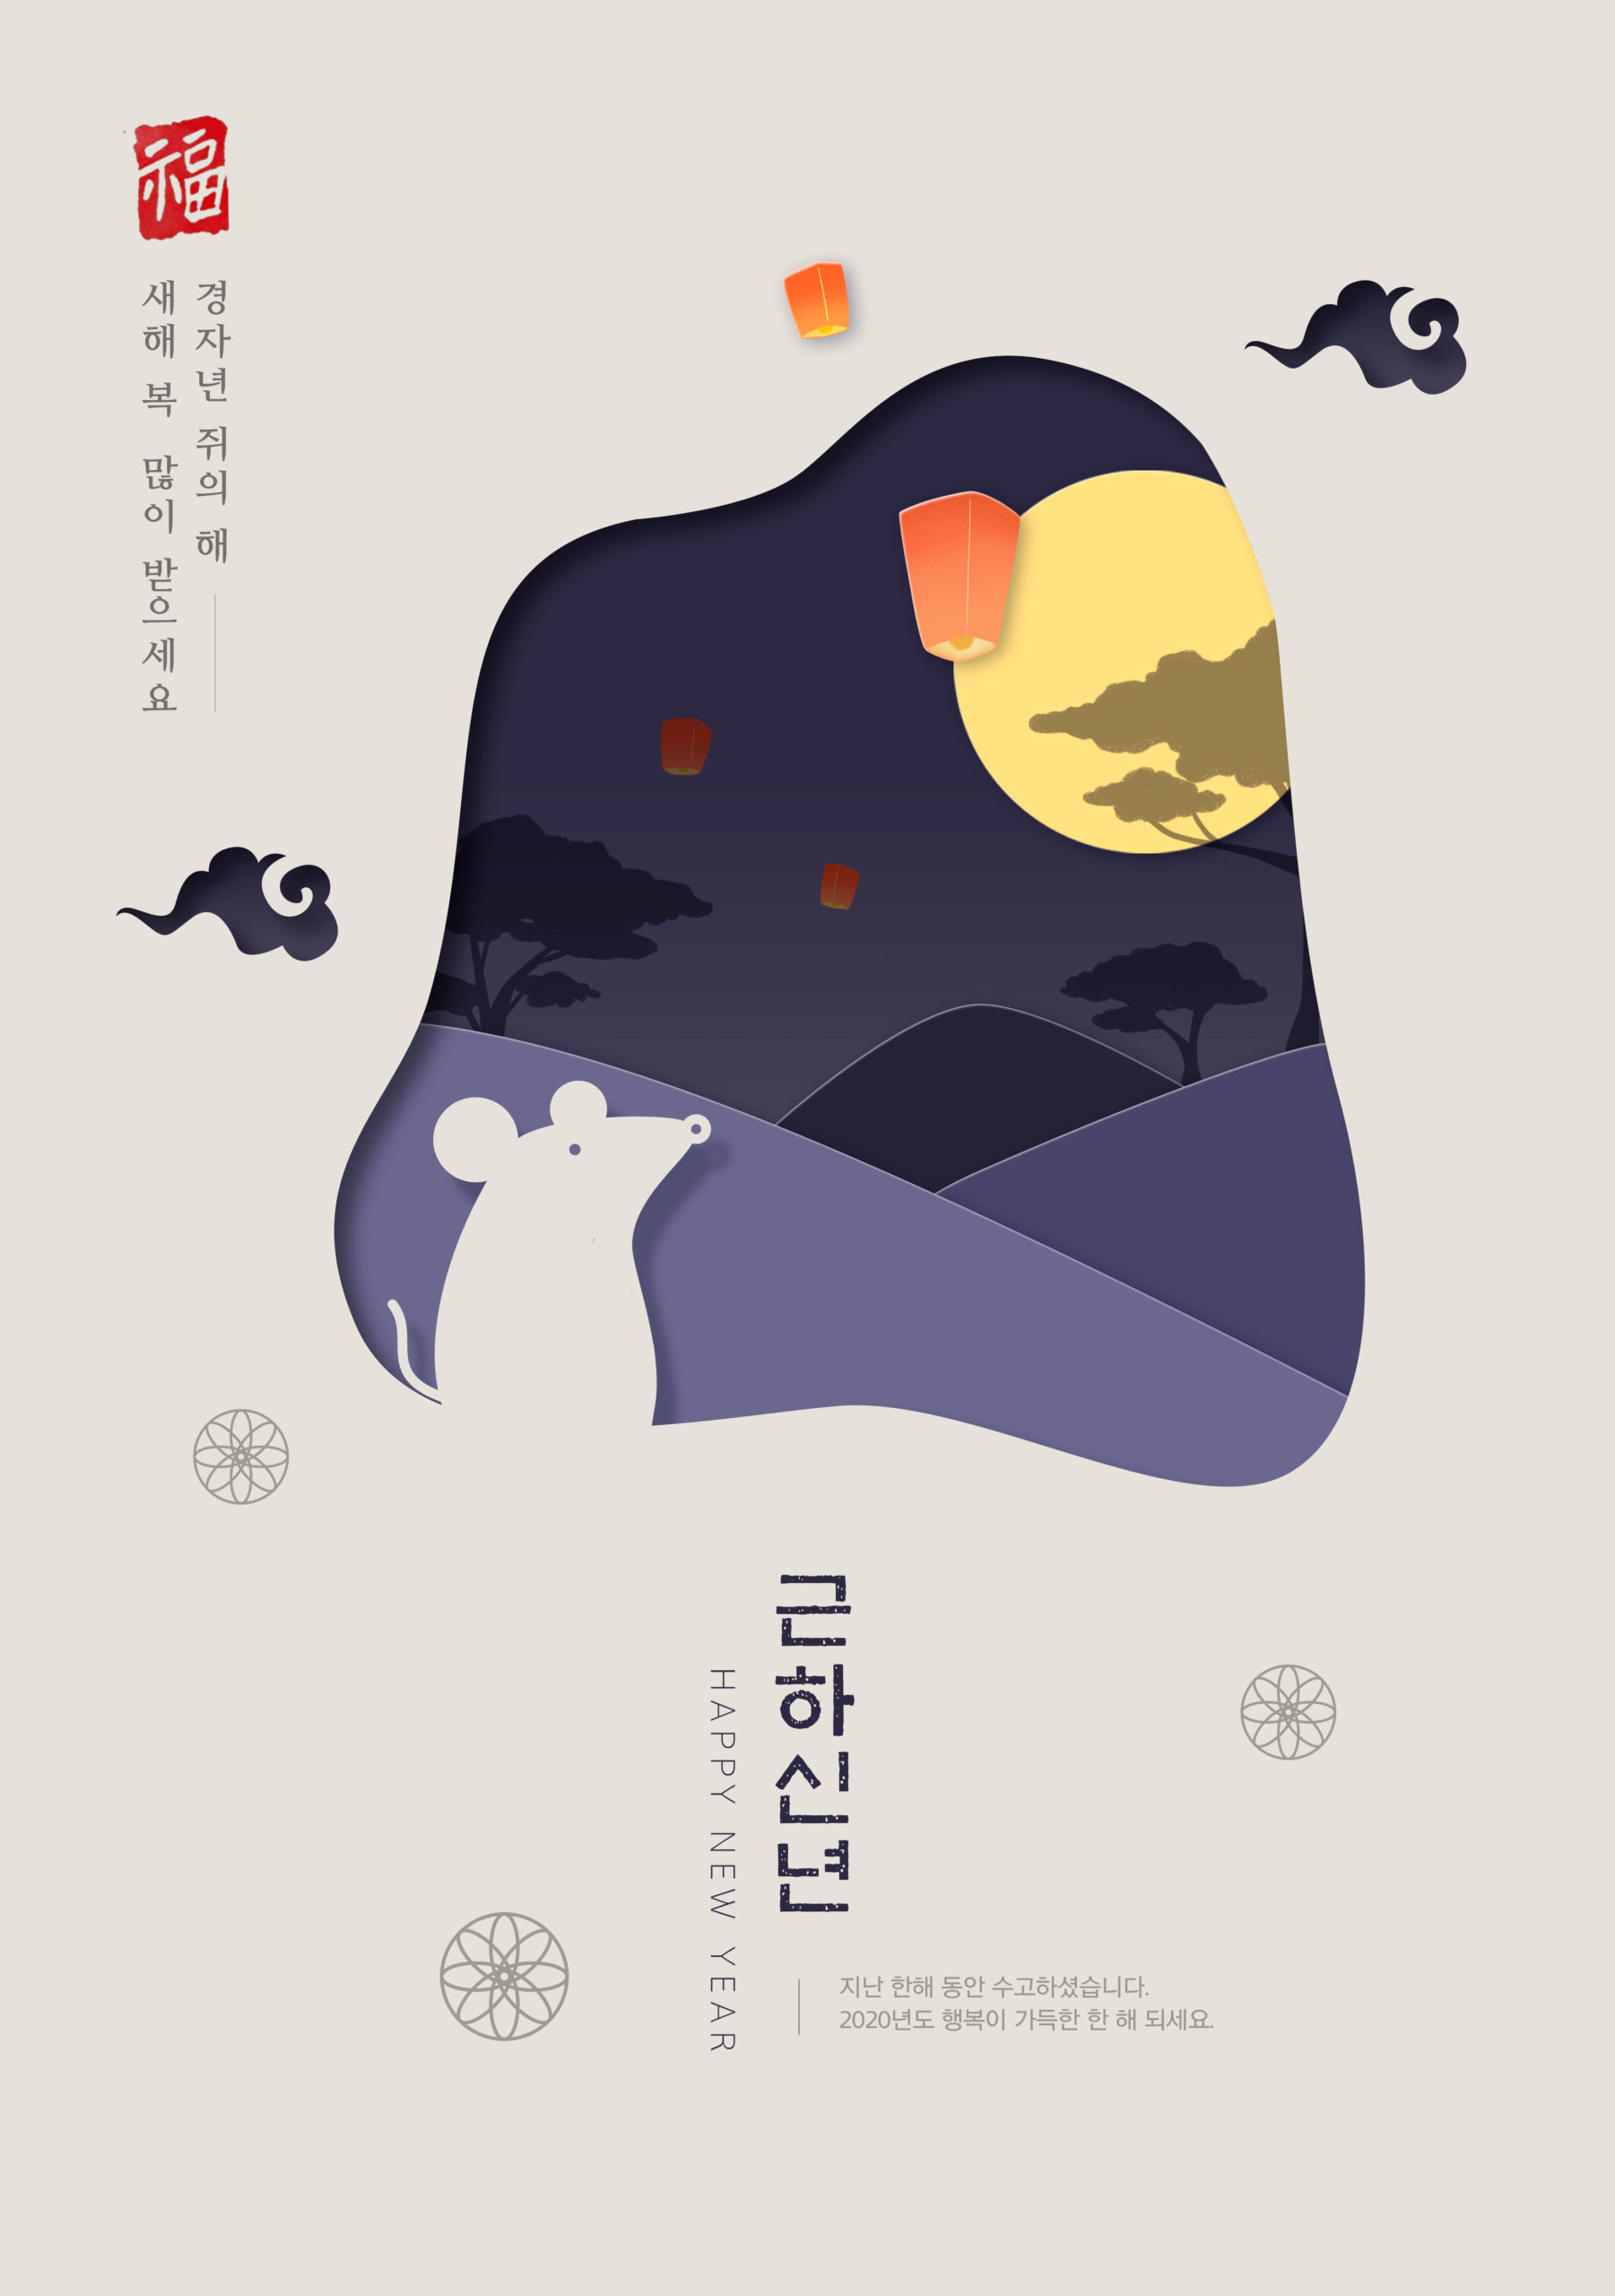 鼠年新春主题韩国海报PSD素材素材库精选模板插图